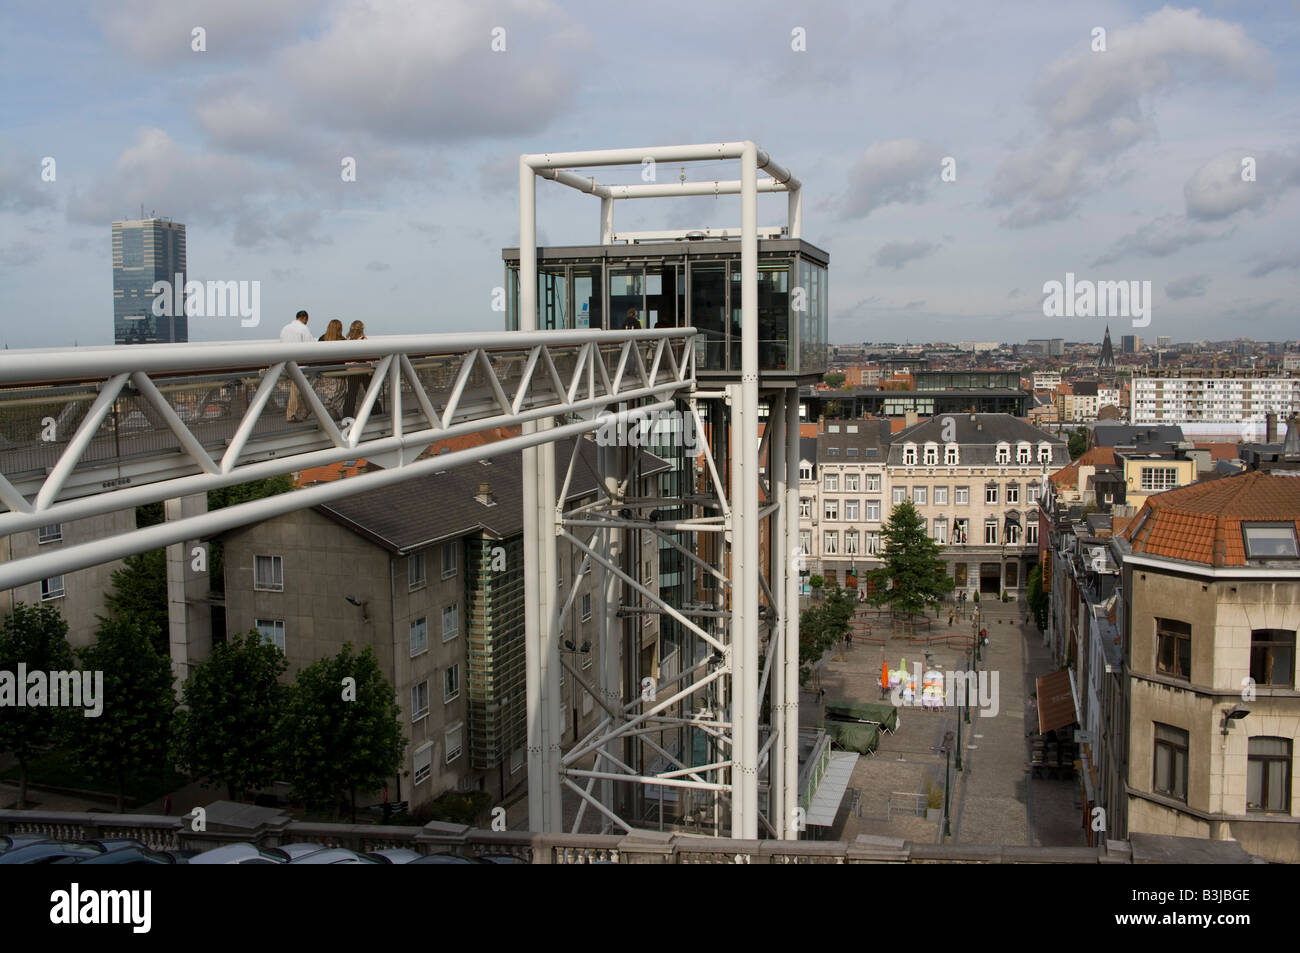 La zone piétonne d'ascenseur dans le quartier des Marolles, colline Galgenberg, Bruxelles, Belgique Banque D'Images